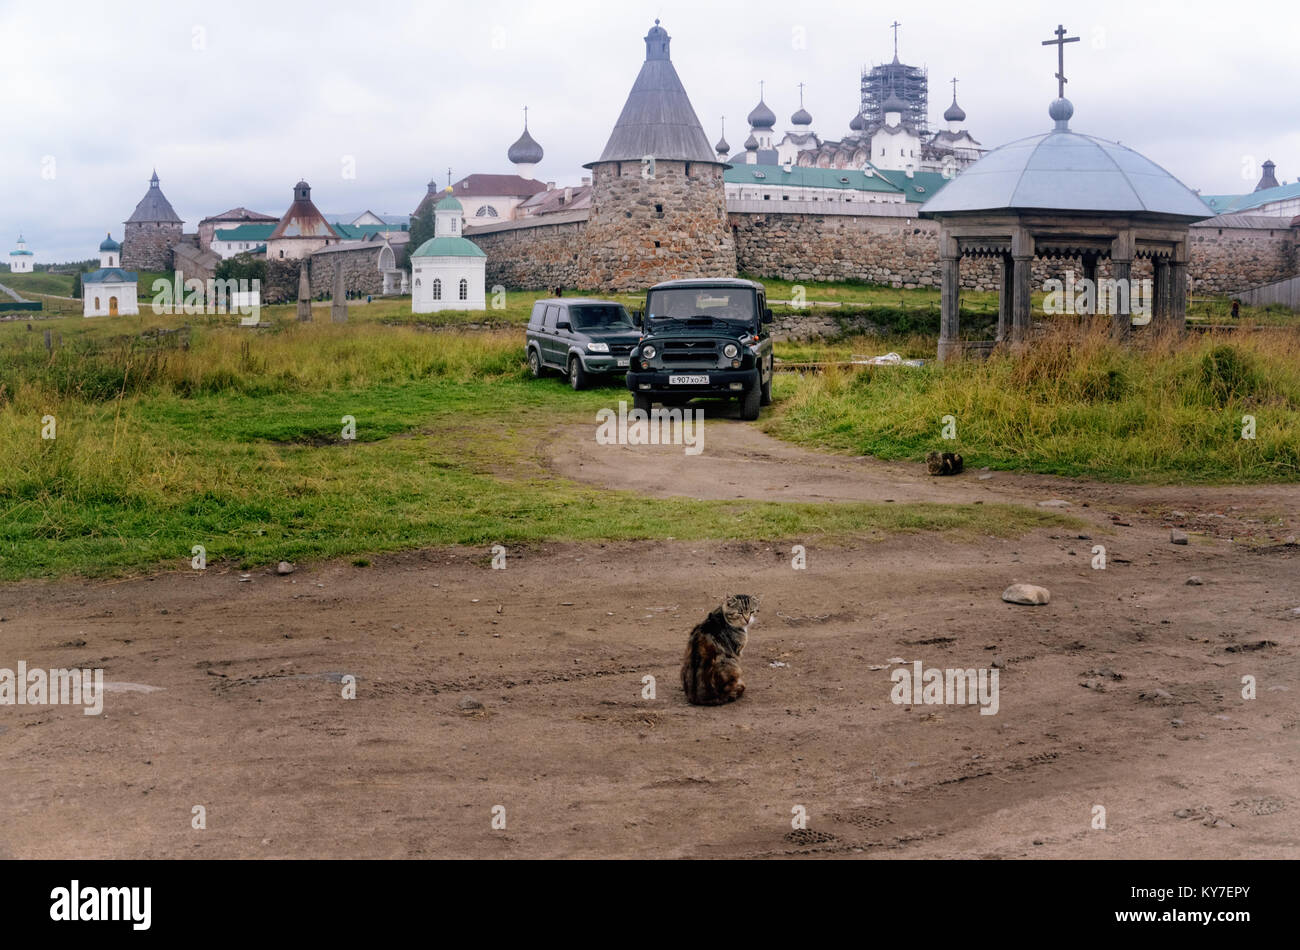 Solovetsky Kloster auf der Insel Bolschoi Solovetsky (solowki Inseln, Russland) von einer Landstraße in der Nähe von solovetsky Dorf gesehen. August 2015. Stockfoto